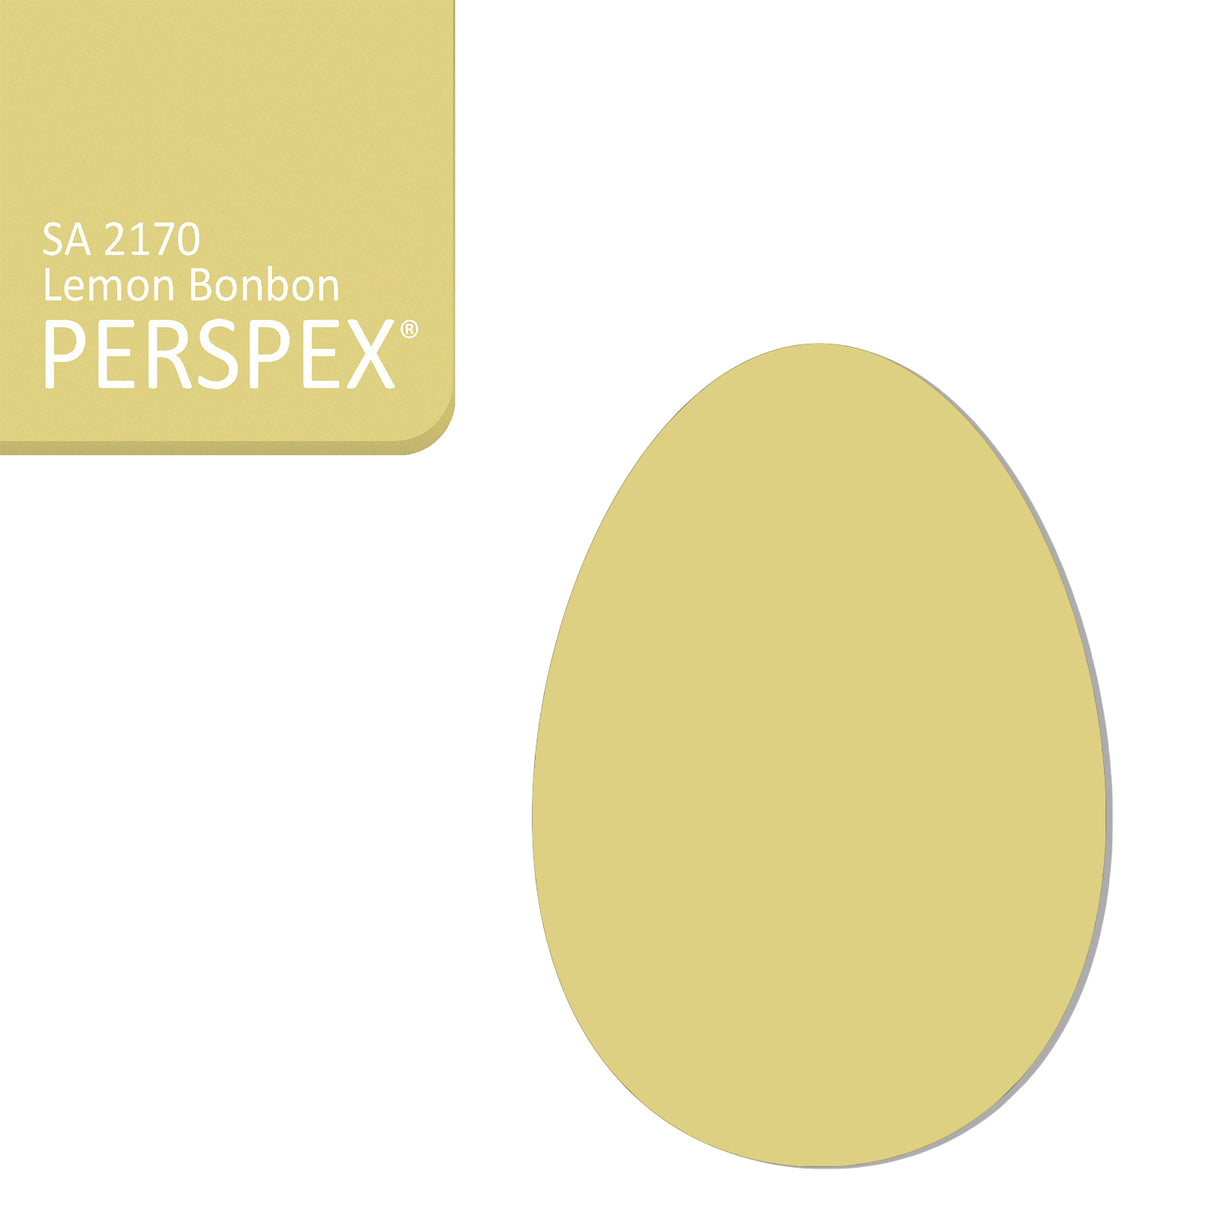 Acrylic Easter Egg Blanks - (10cm Pack of 5) - Laserworksuk